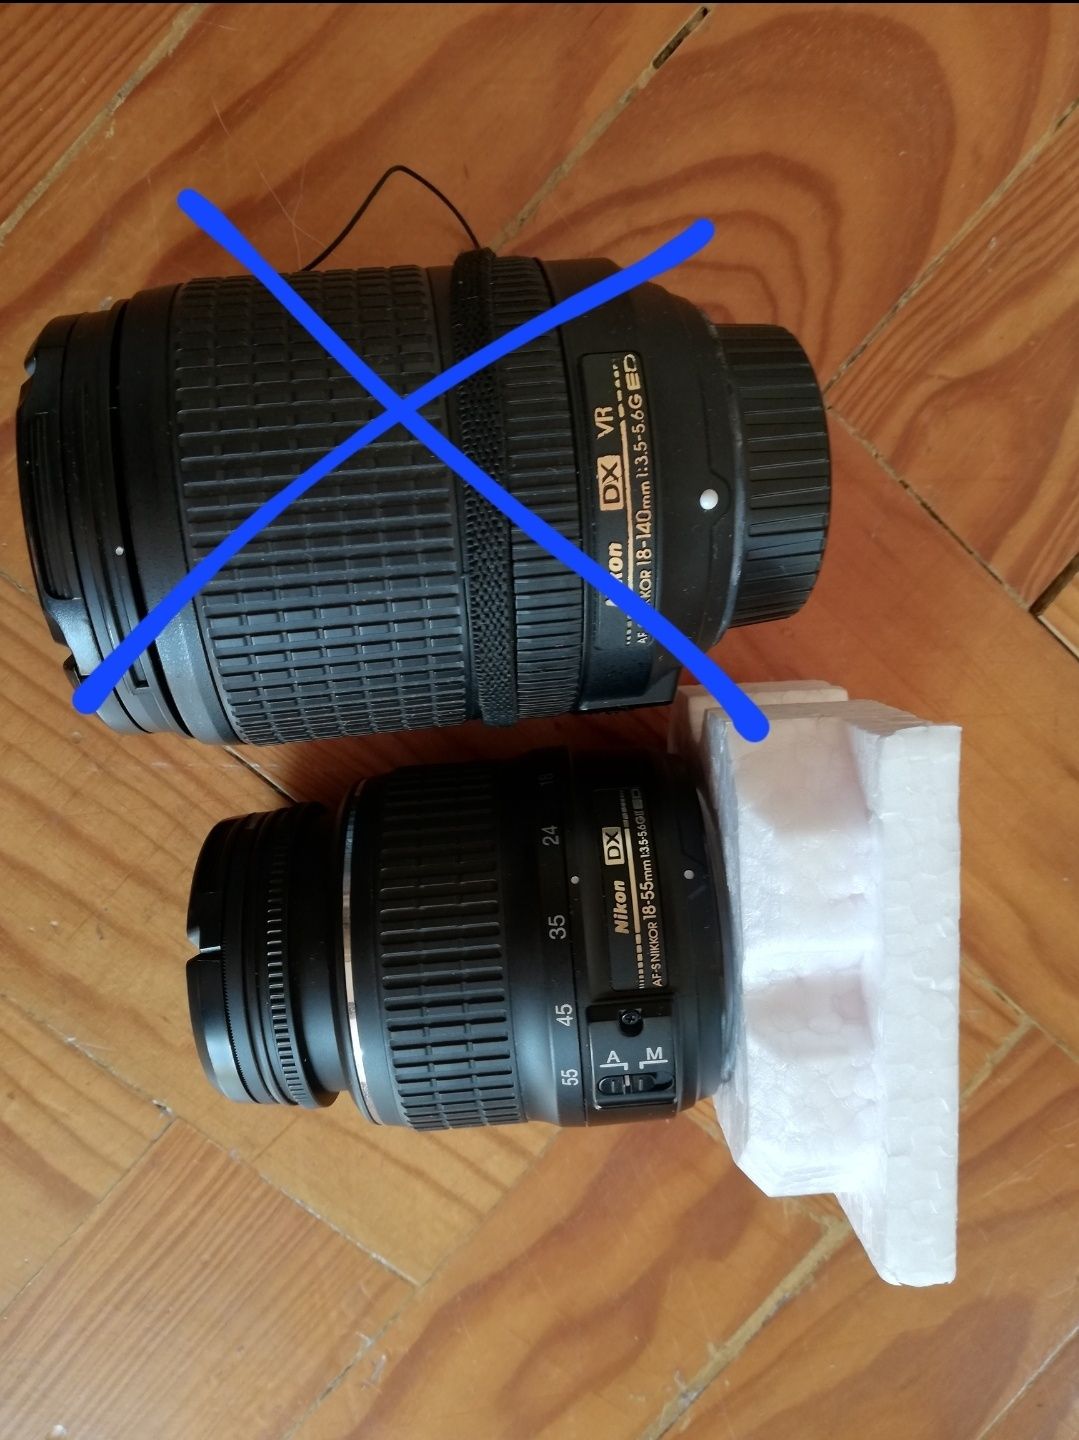 Nikon 3200 + lente 18-55